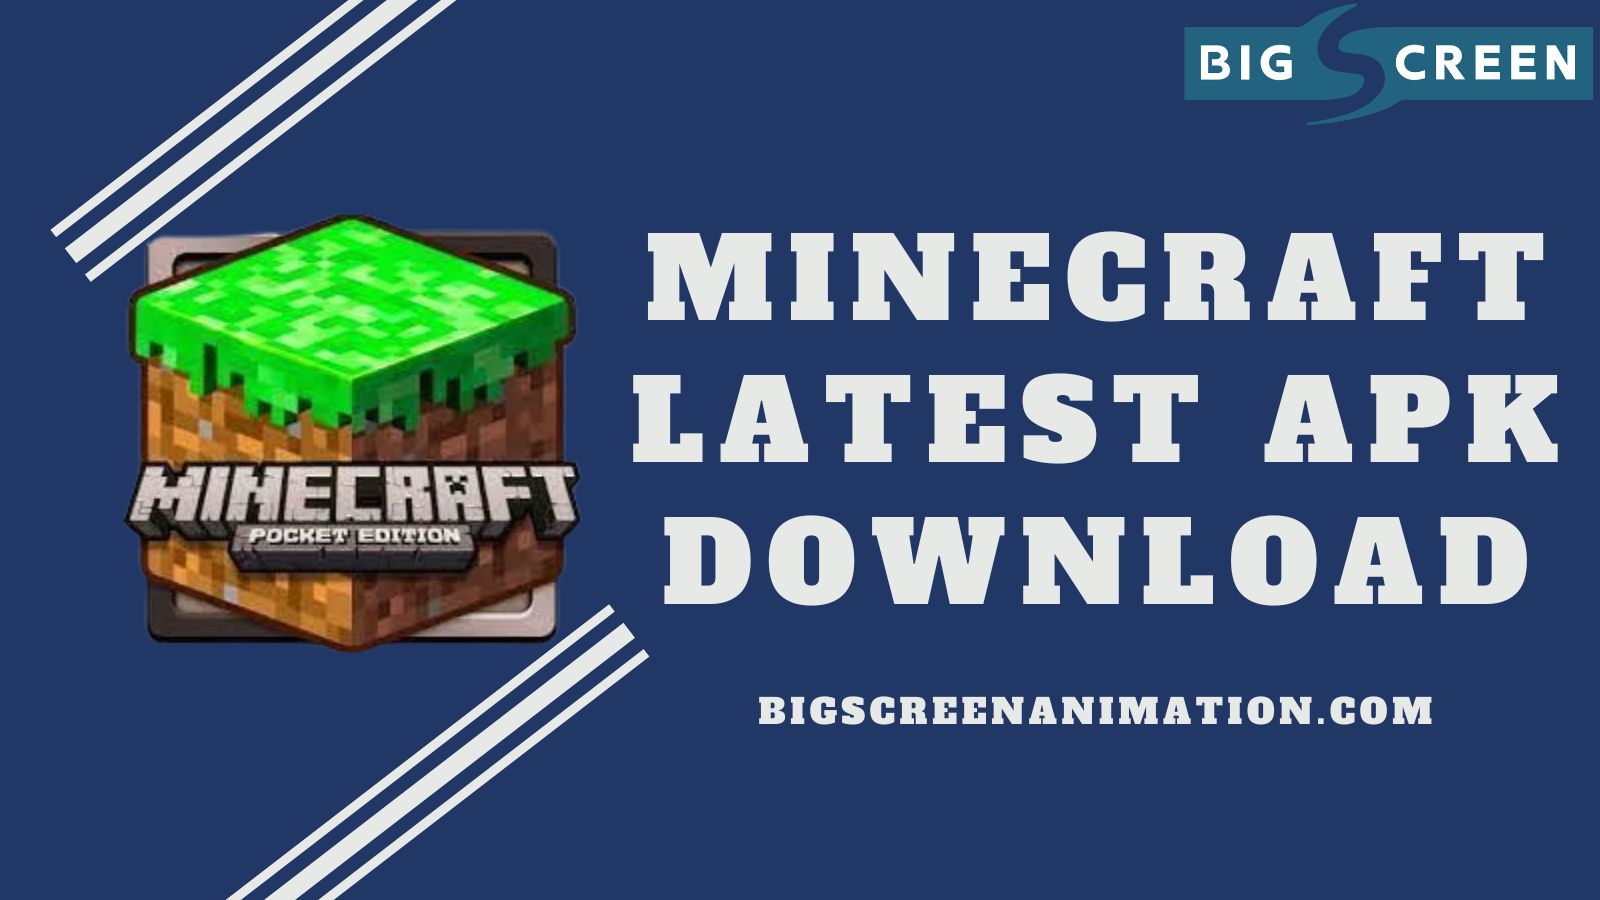 Minecraft Latest APK Download